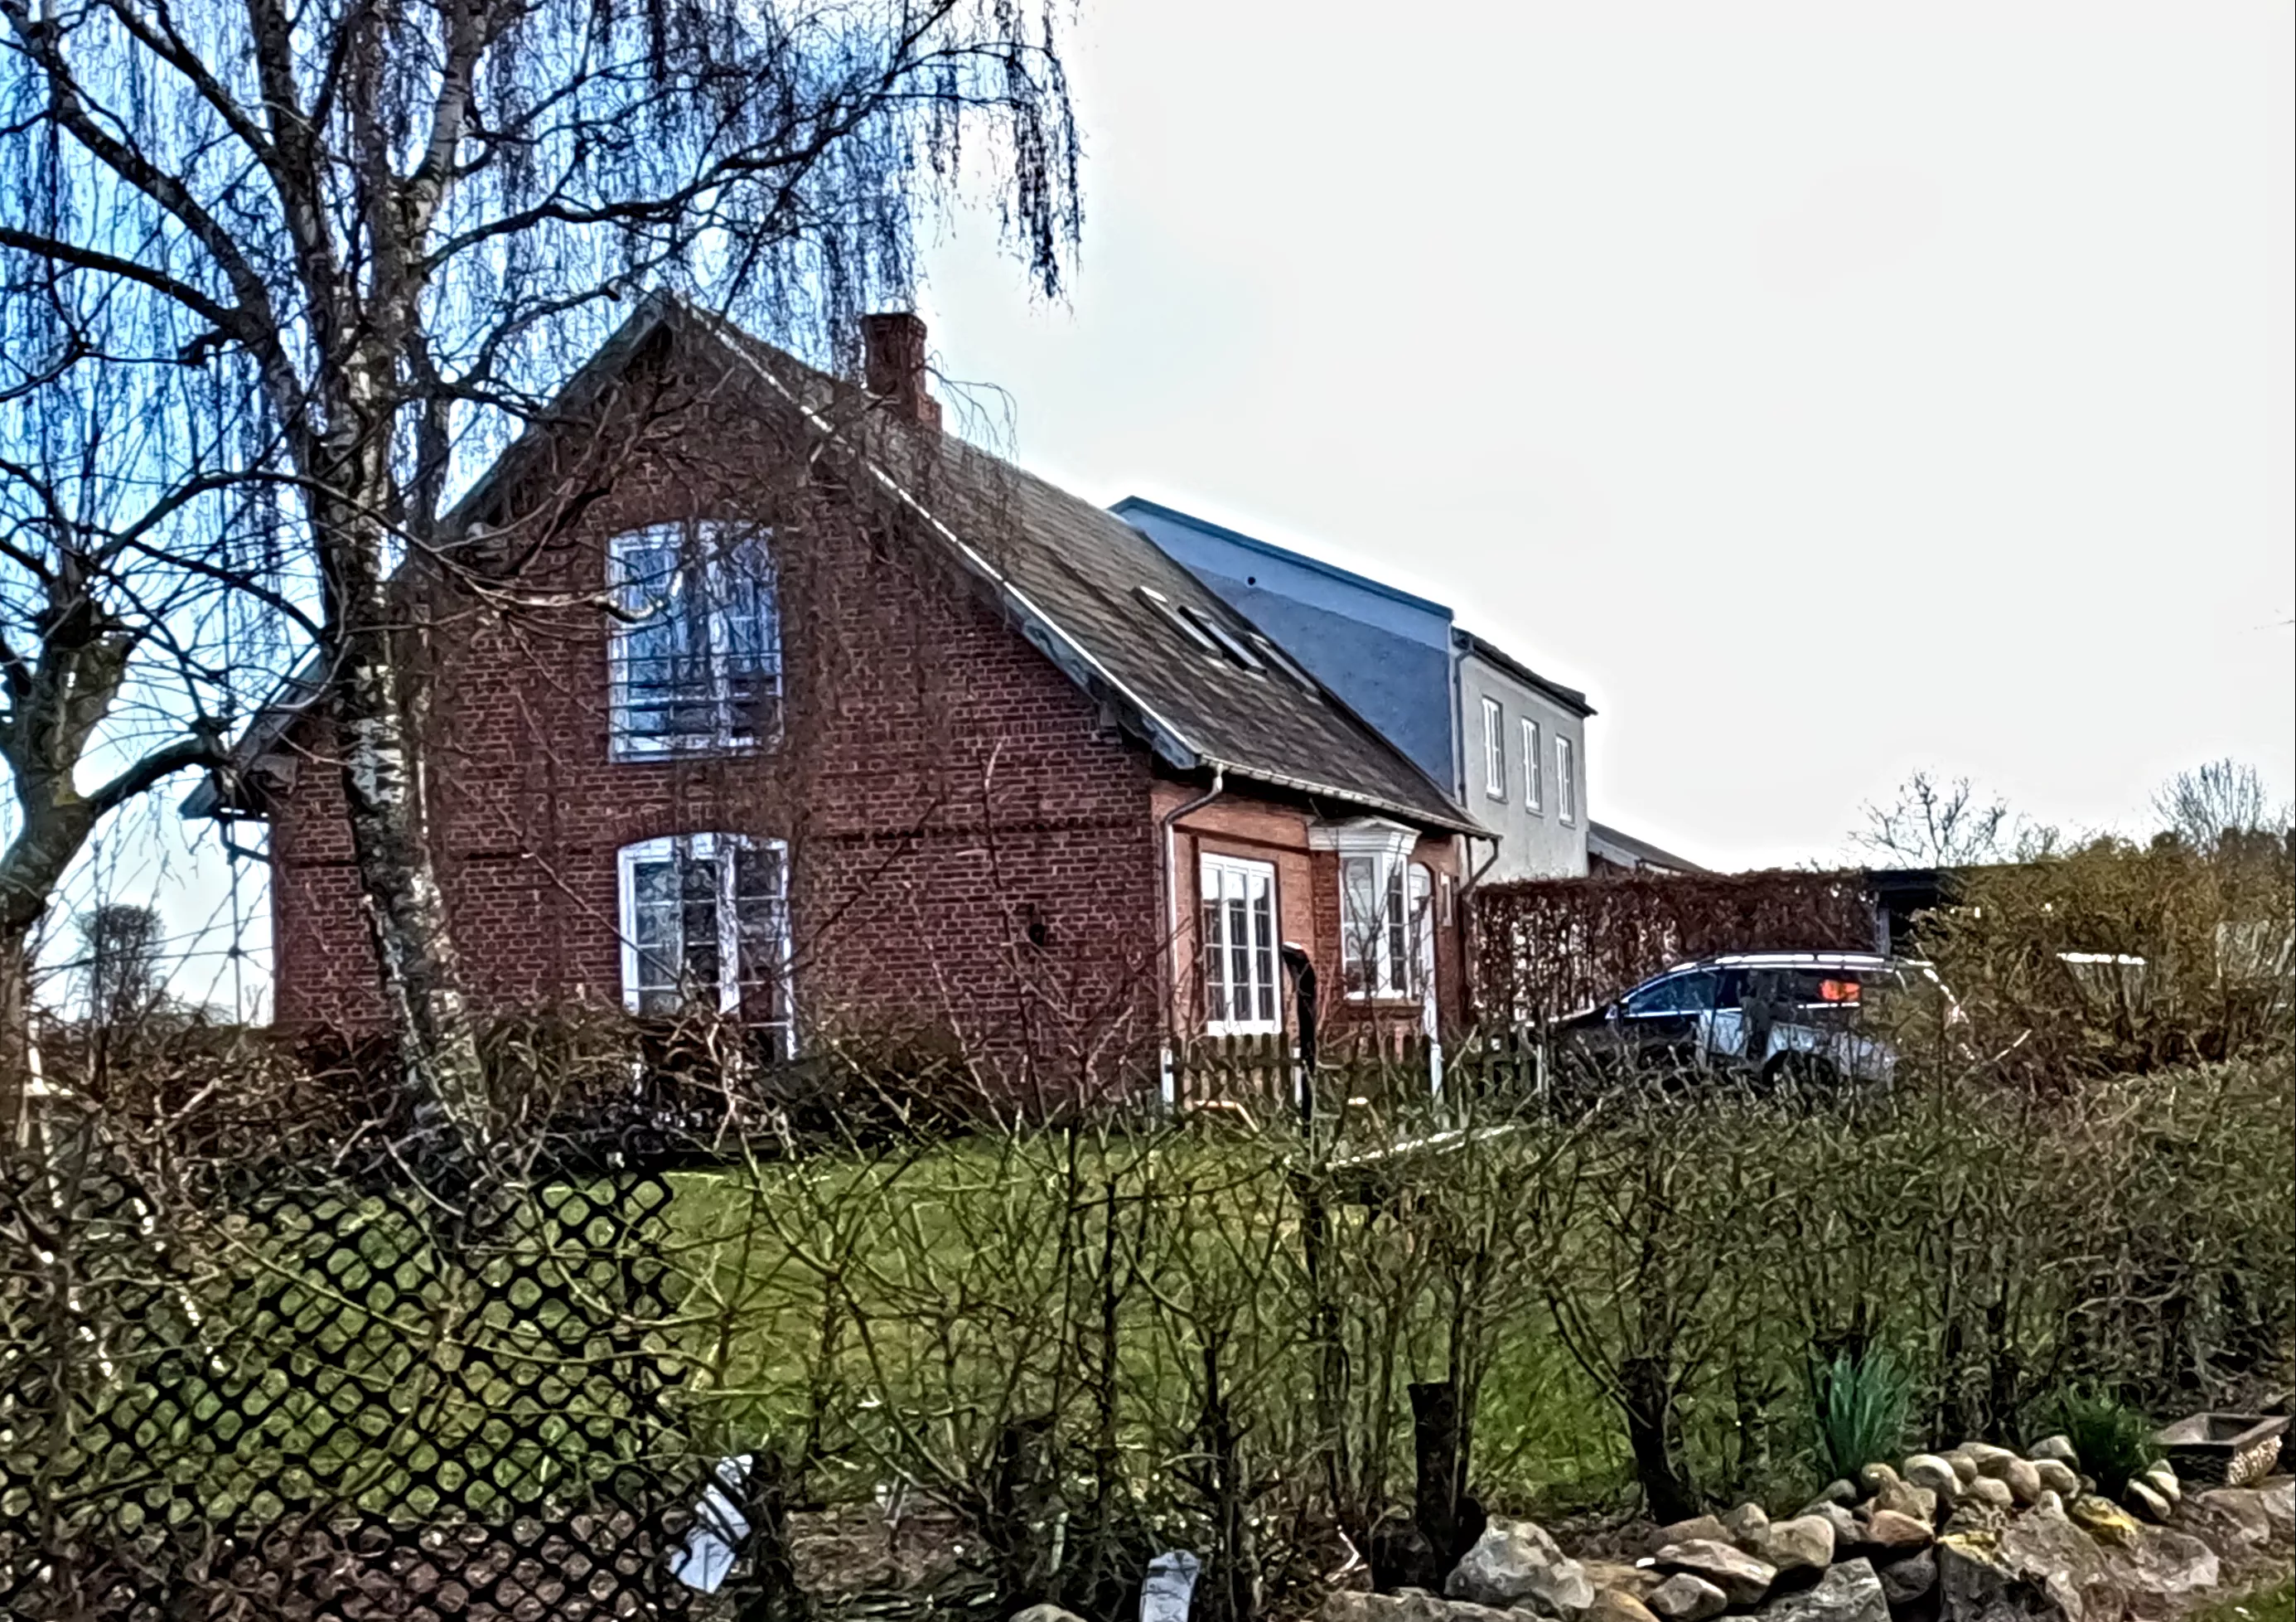 Billede af Drammelsbæk Billetsalgssted, hvor trinbrættet har ligget her hvor fotografen står - trinbrættet er nedrevet.